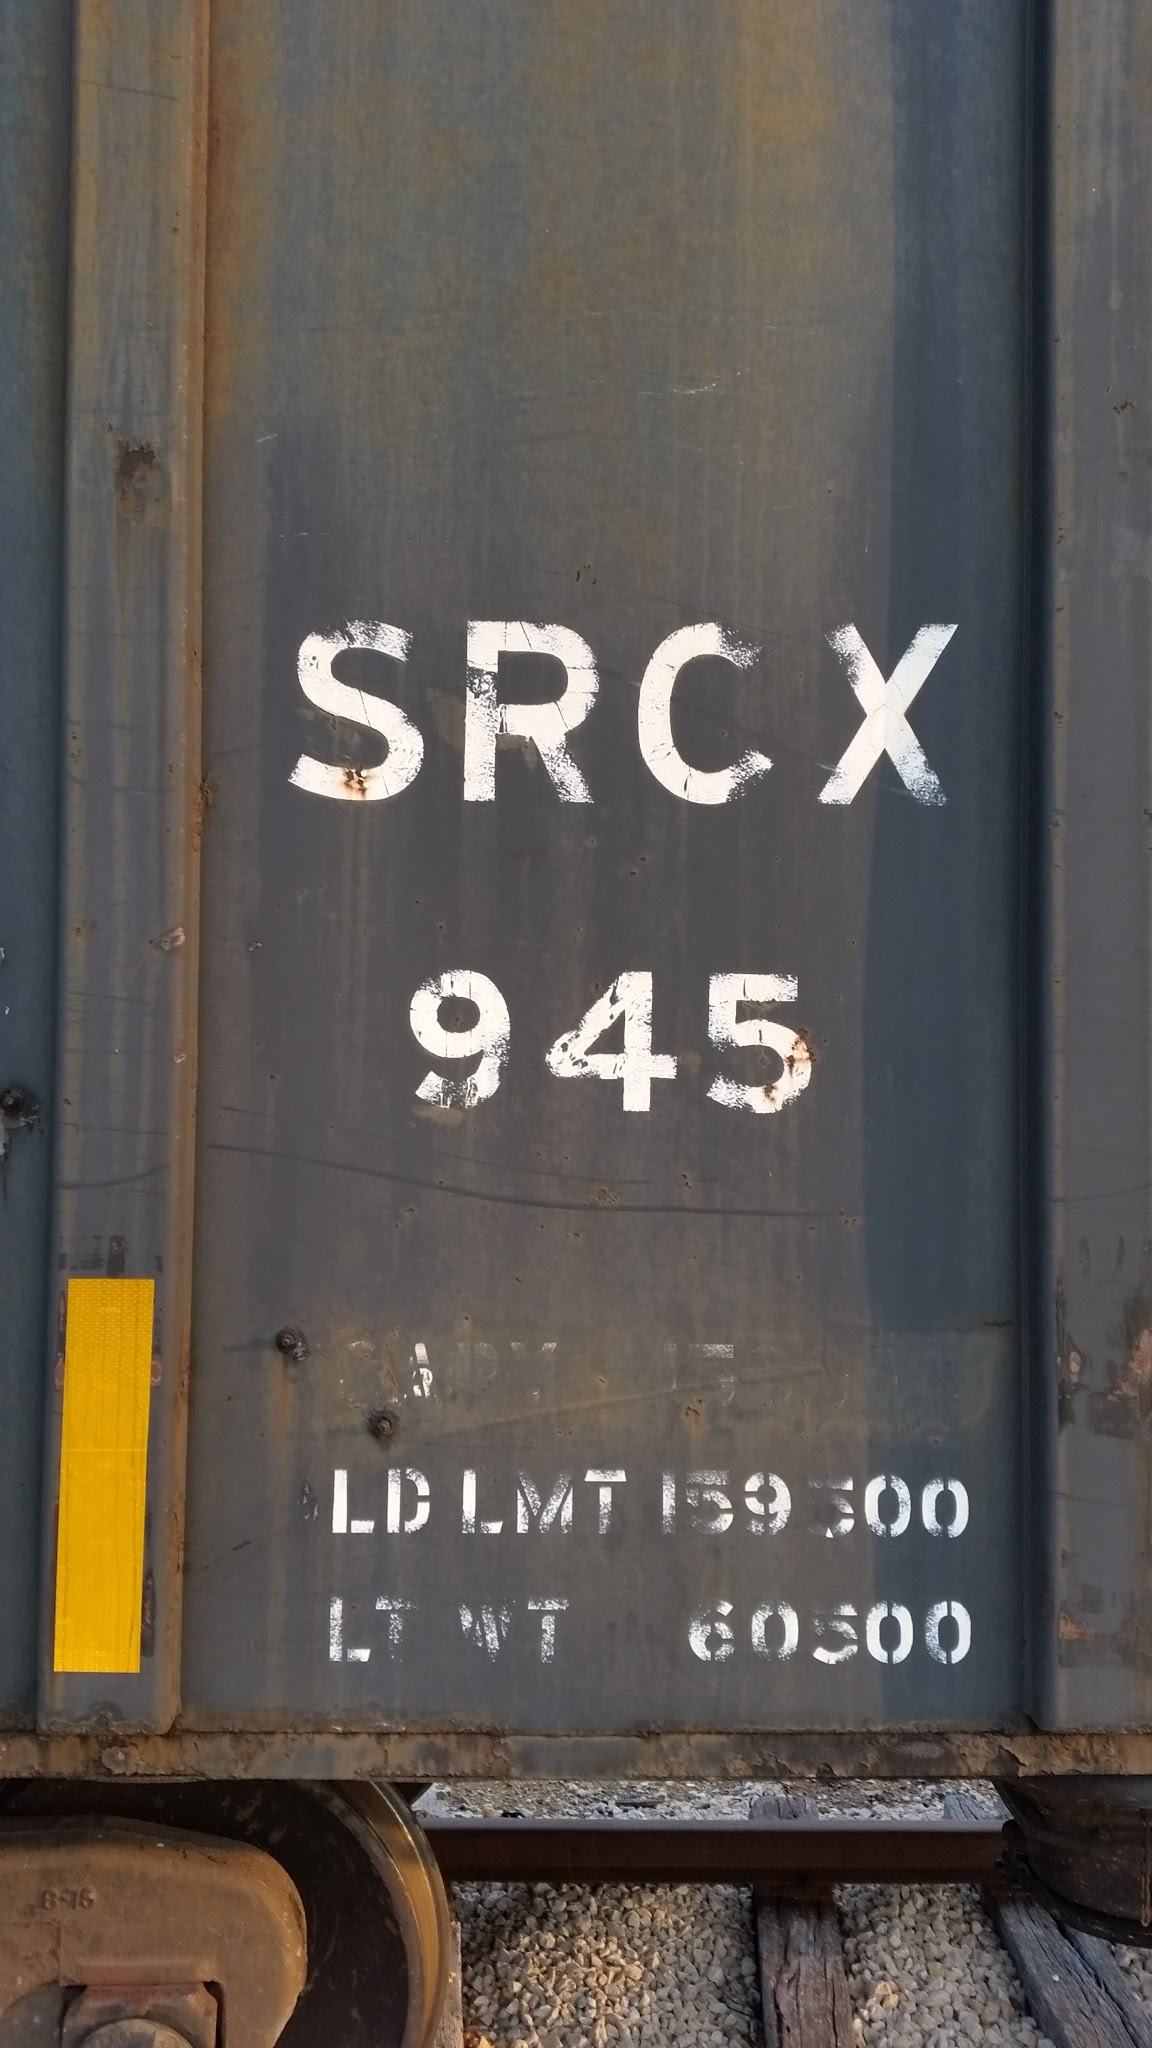 SRCX 945